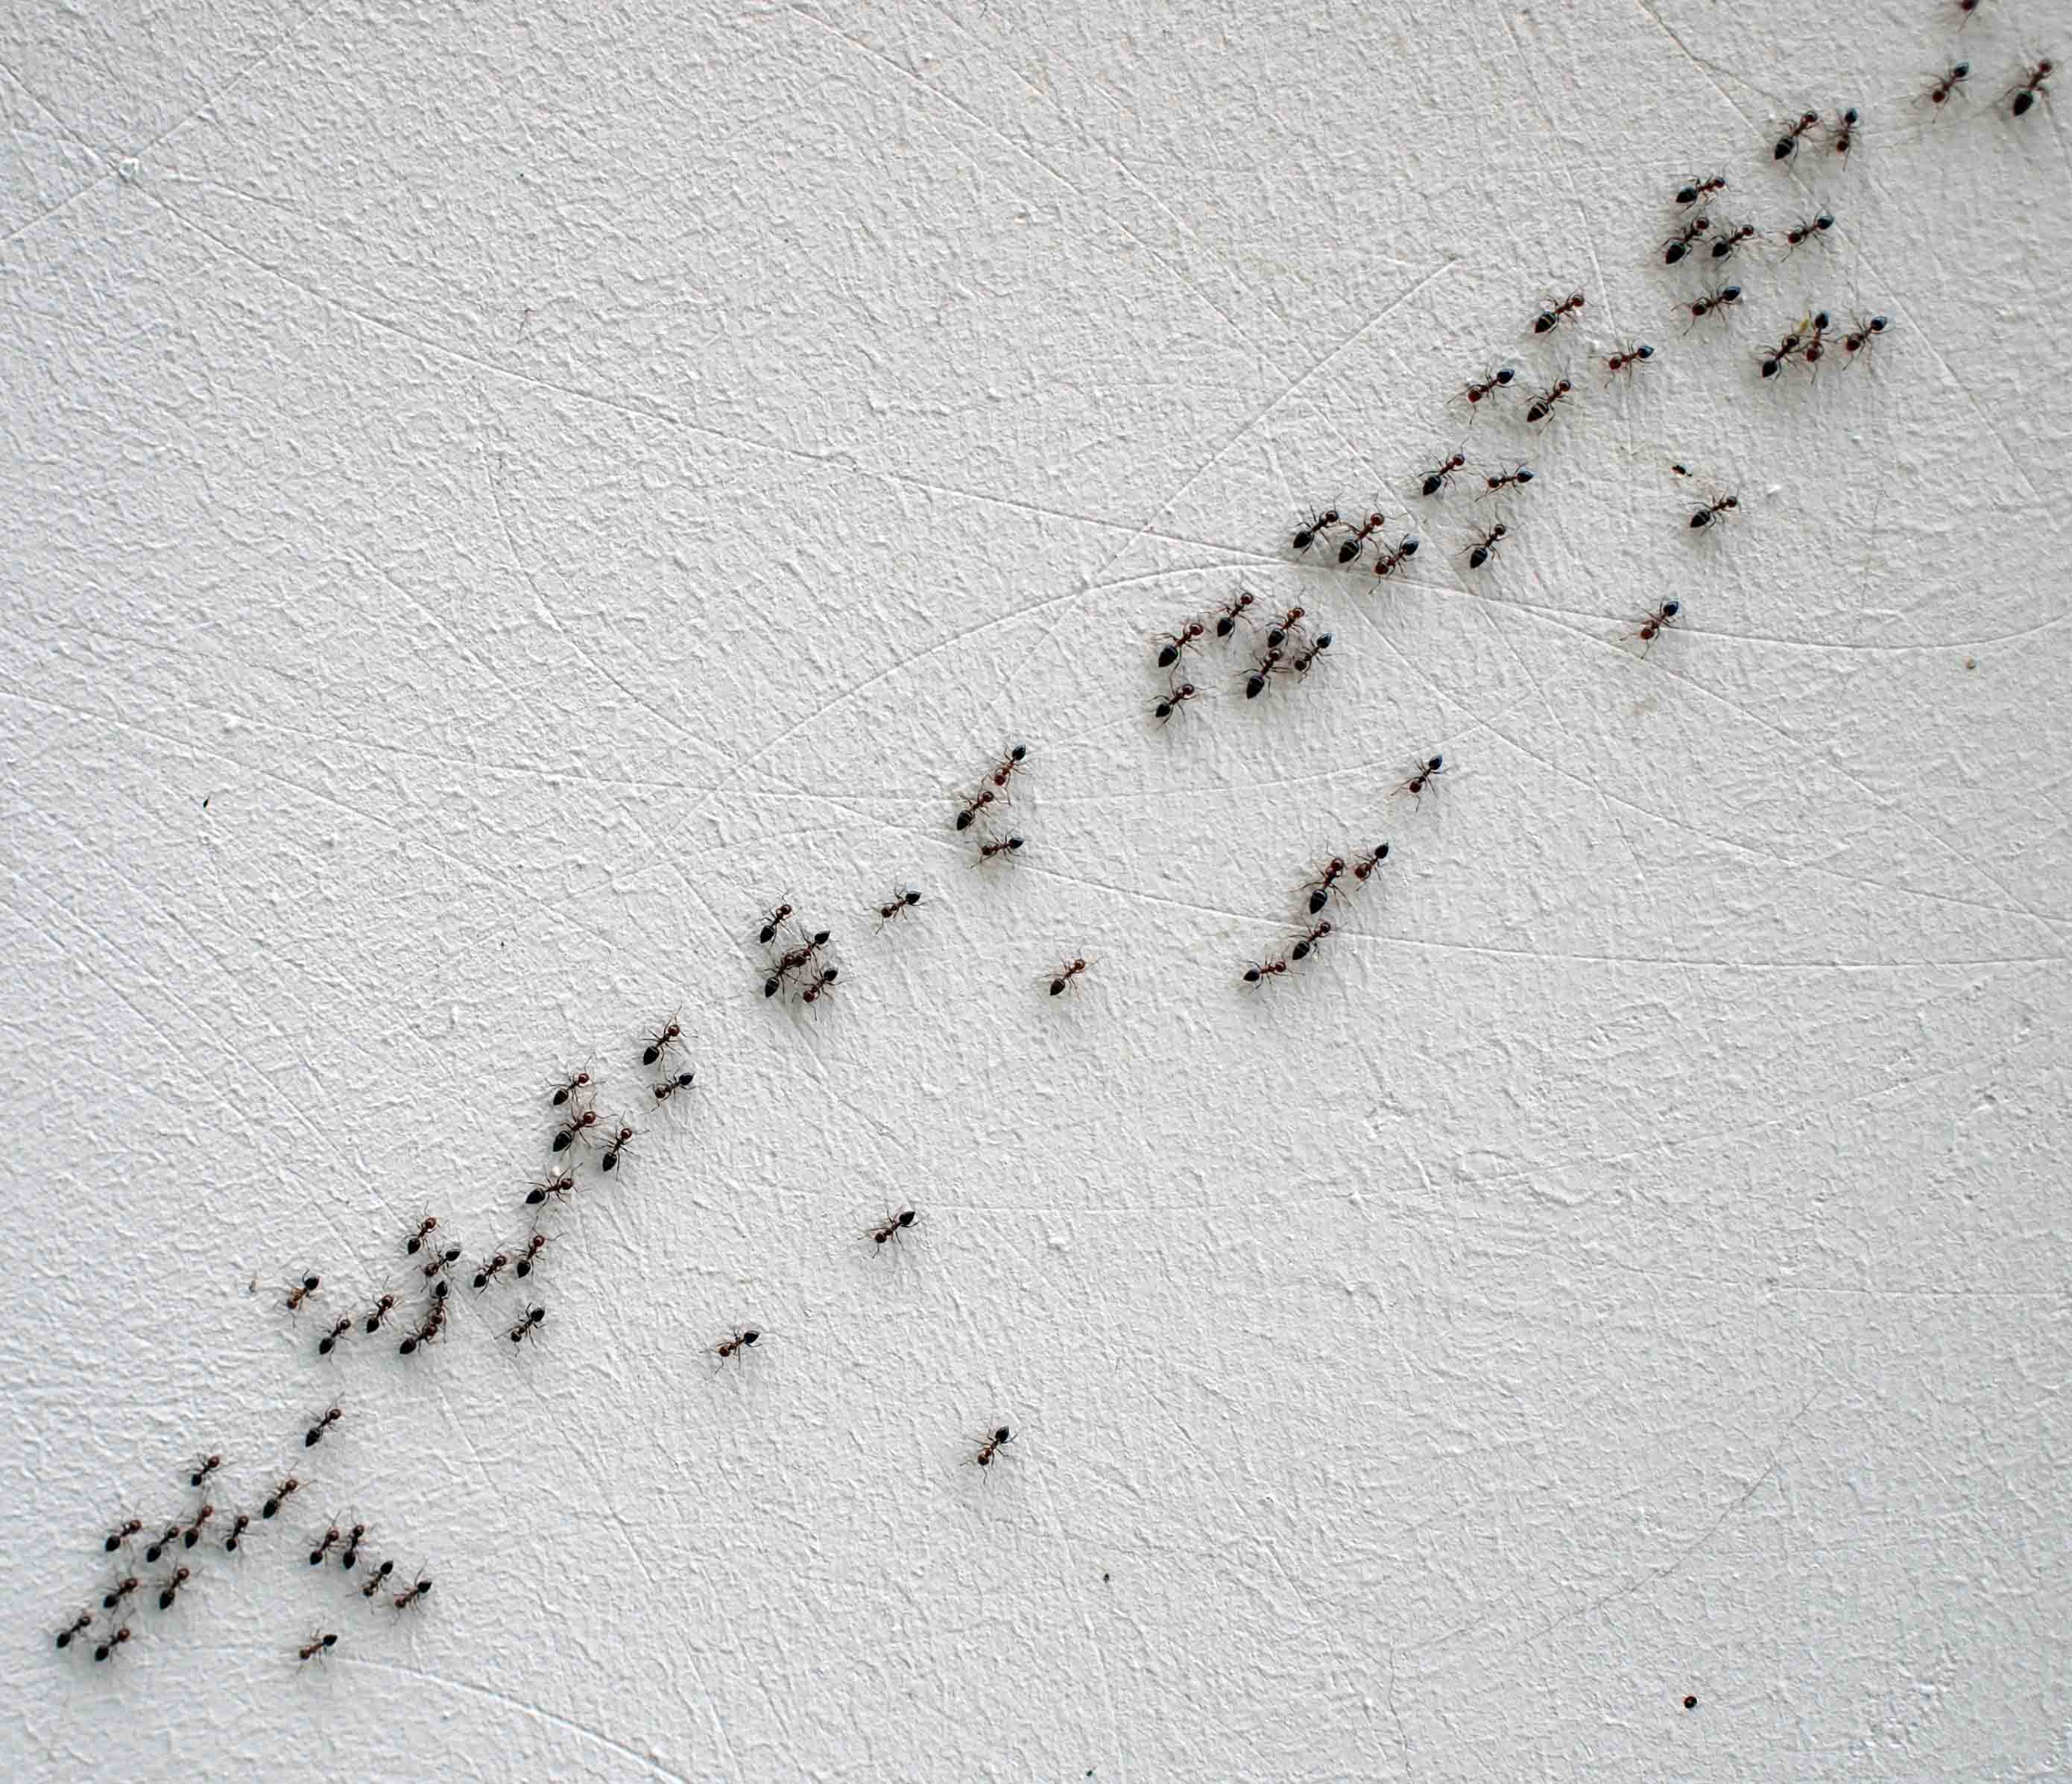 hormigas